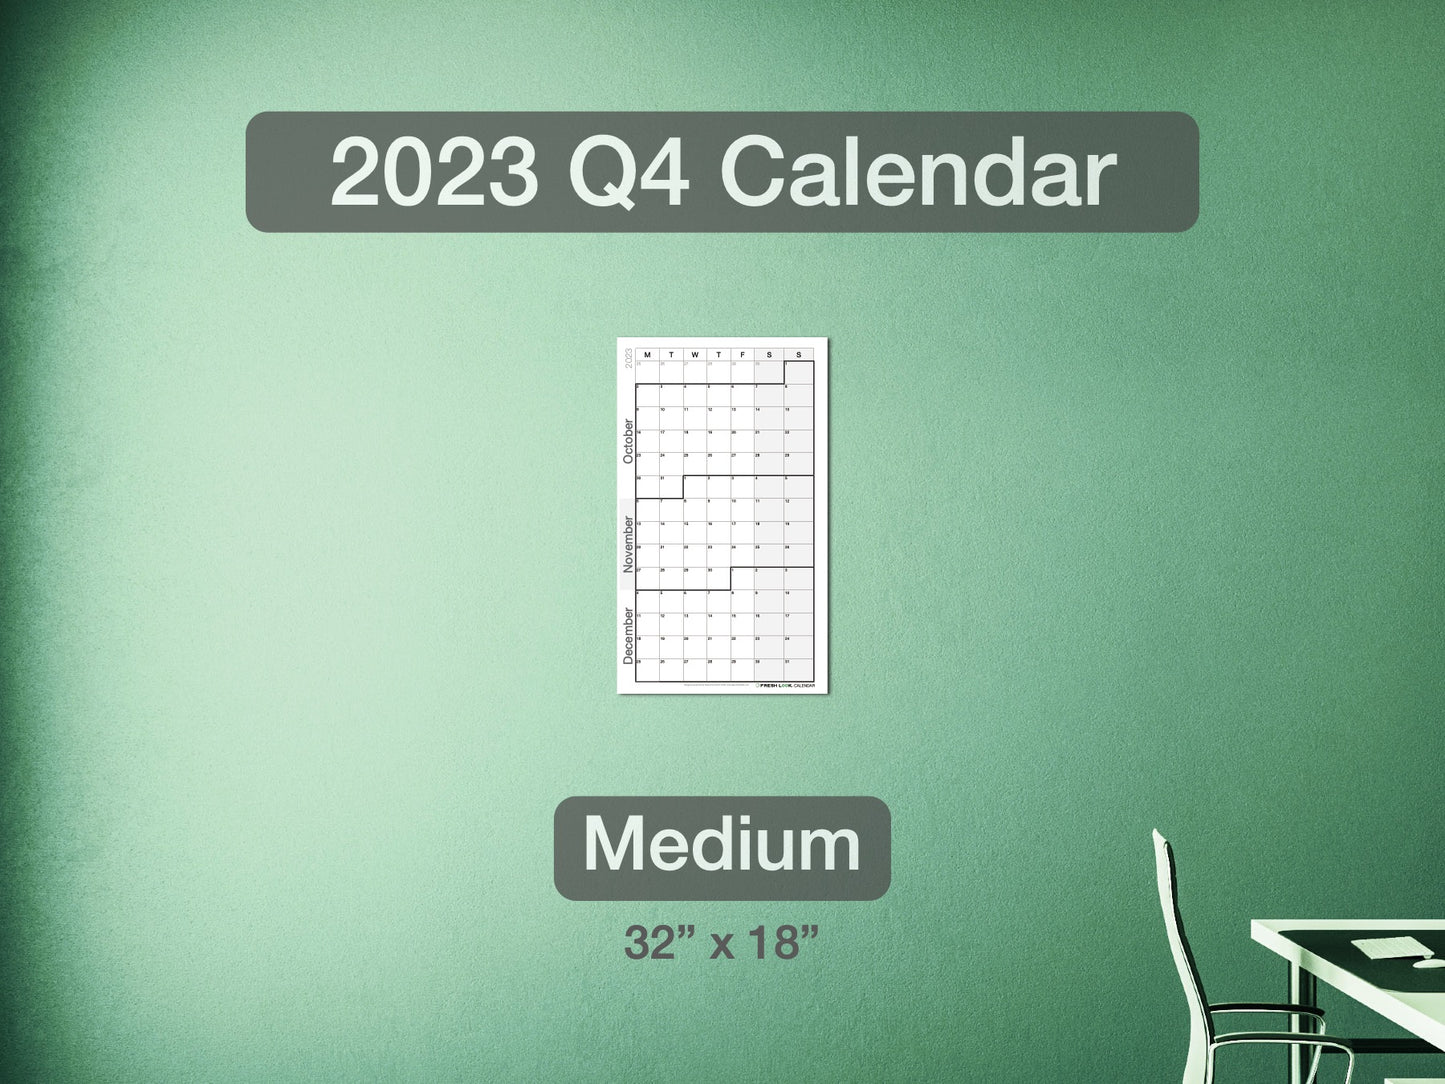 2023 Q4 Calendar Medium